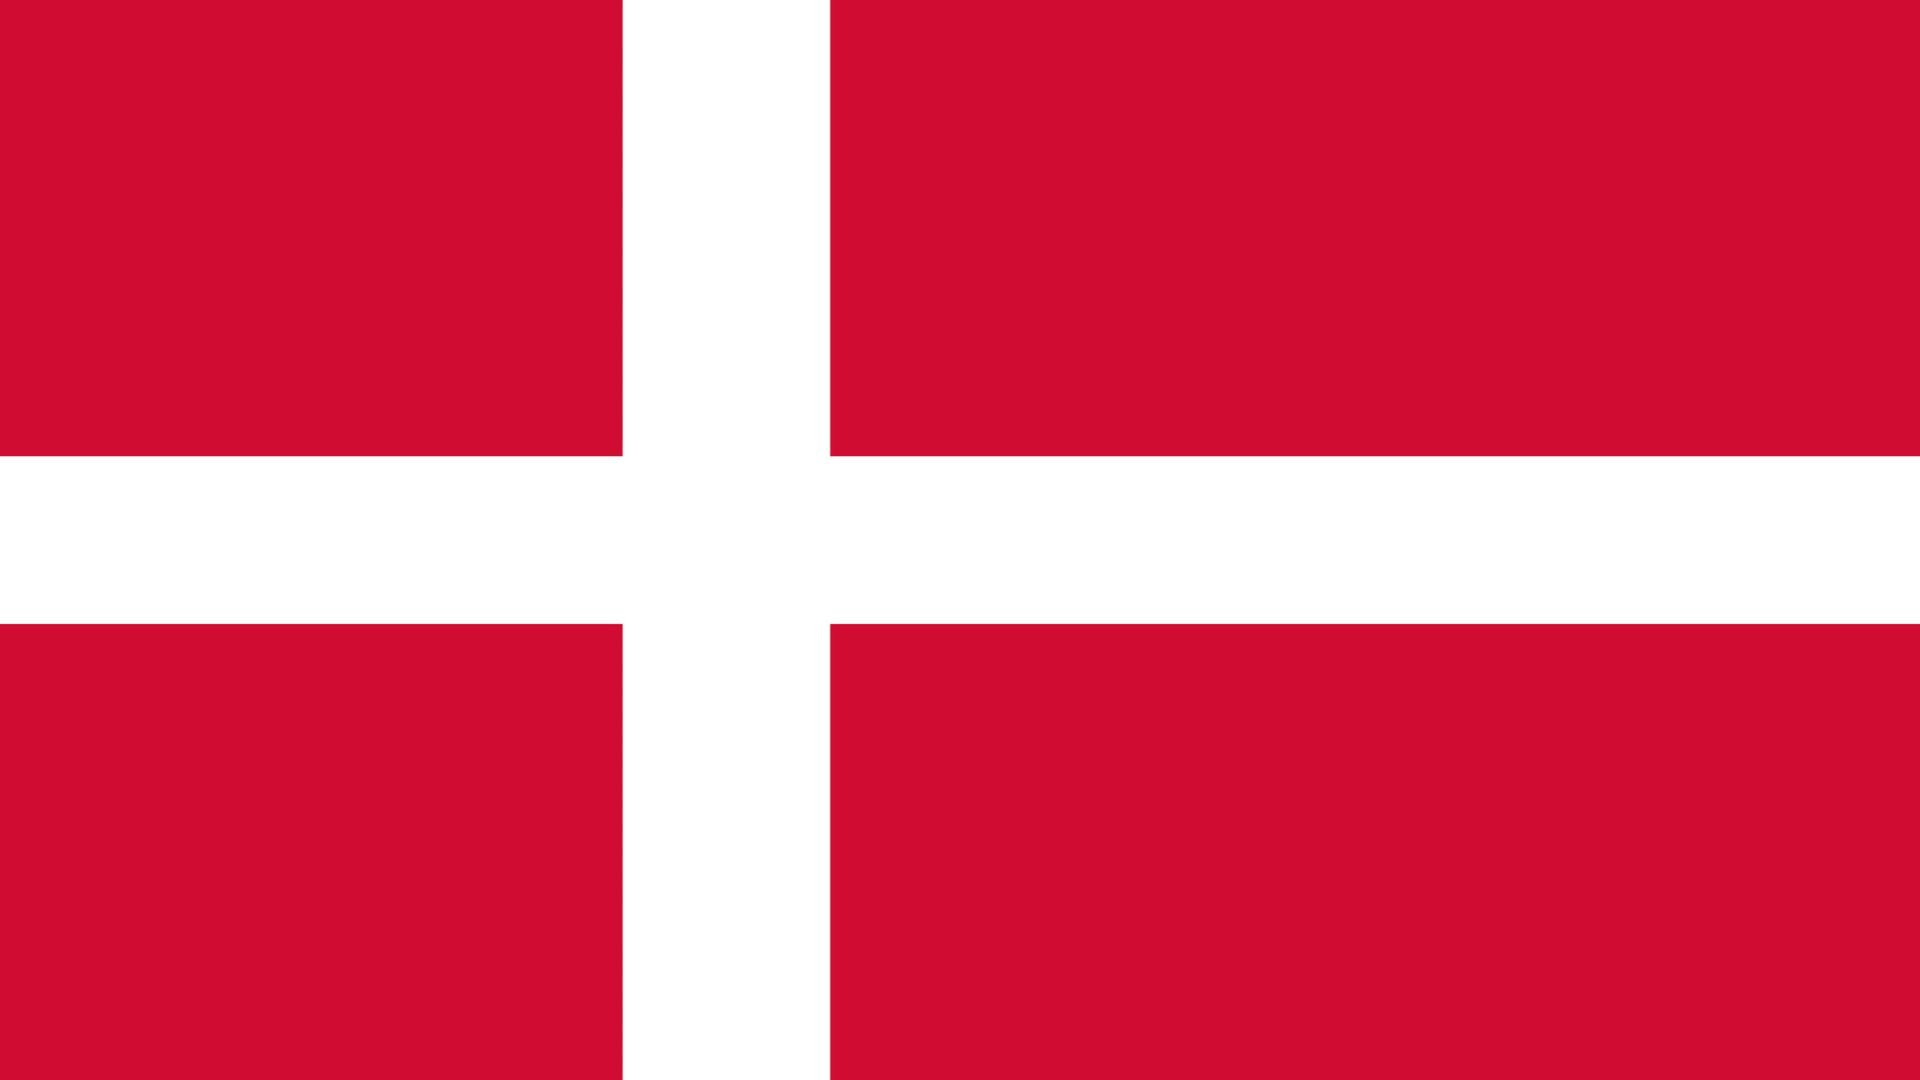 A bandeira da Dinamarca é vermelha e possui uma cruz, feita na cor branca e que se estende até as bordas da bandeira.